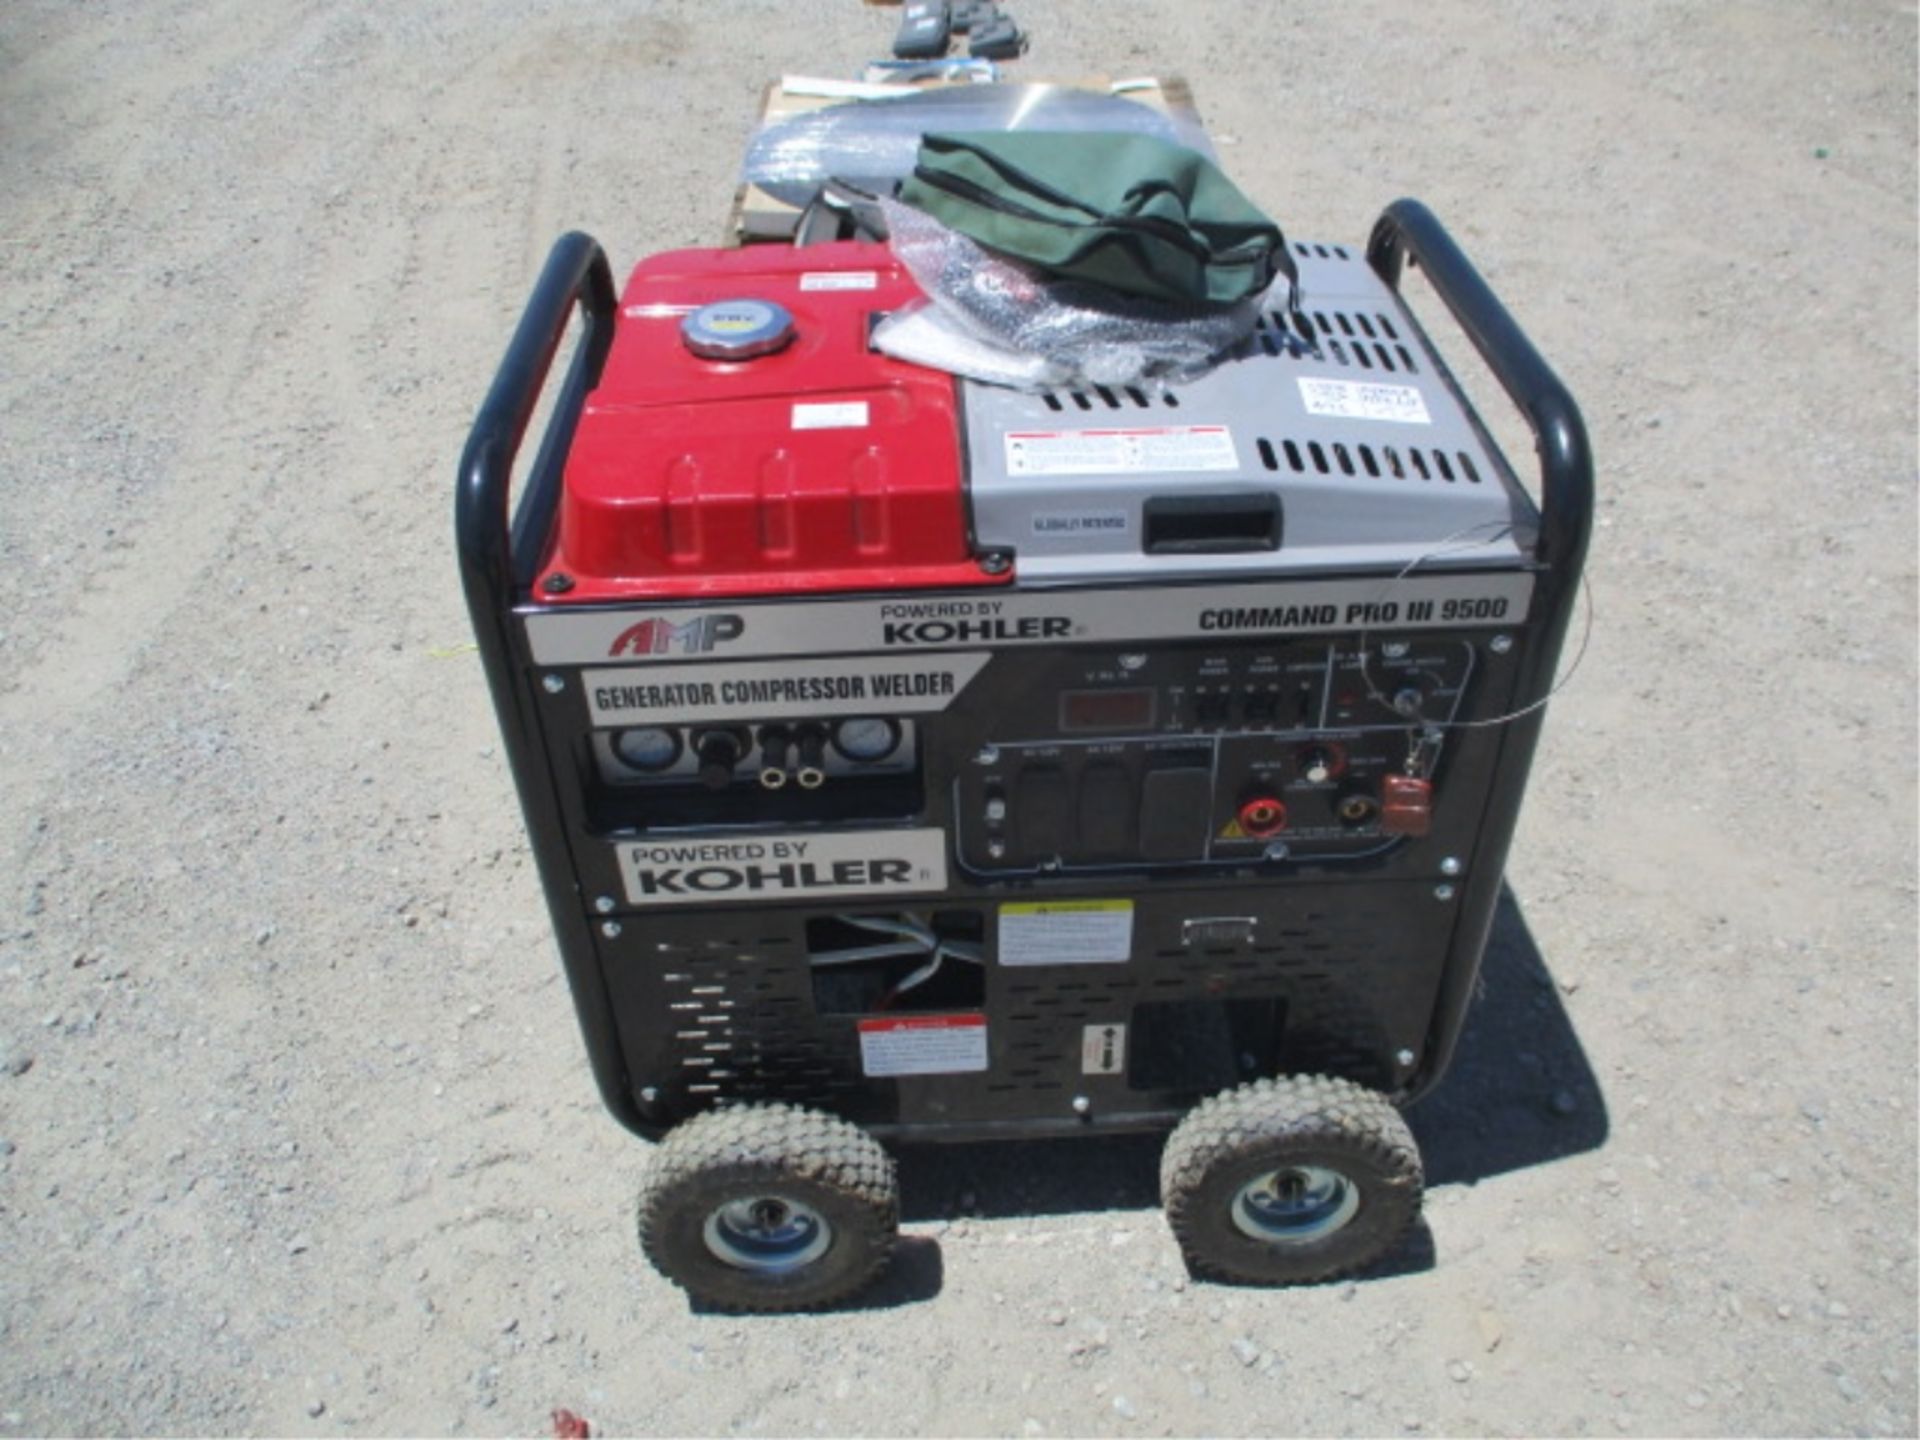 Kohler Command Pro III 9500 Generator Compressor, Welder, Gas Powered, S/N: 4919803918 - Image 4 of 28